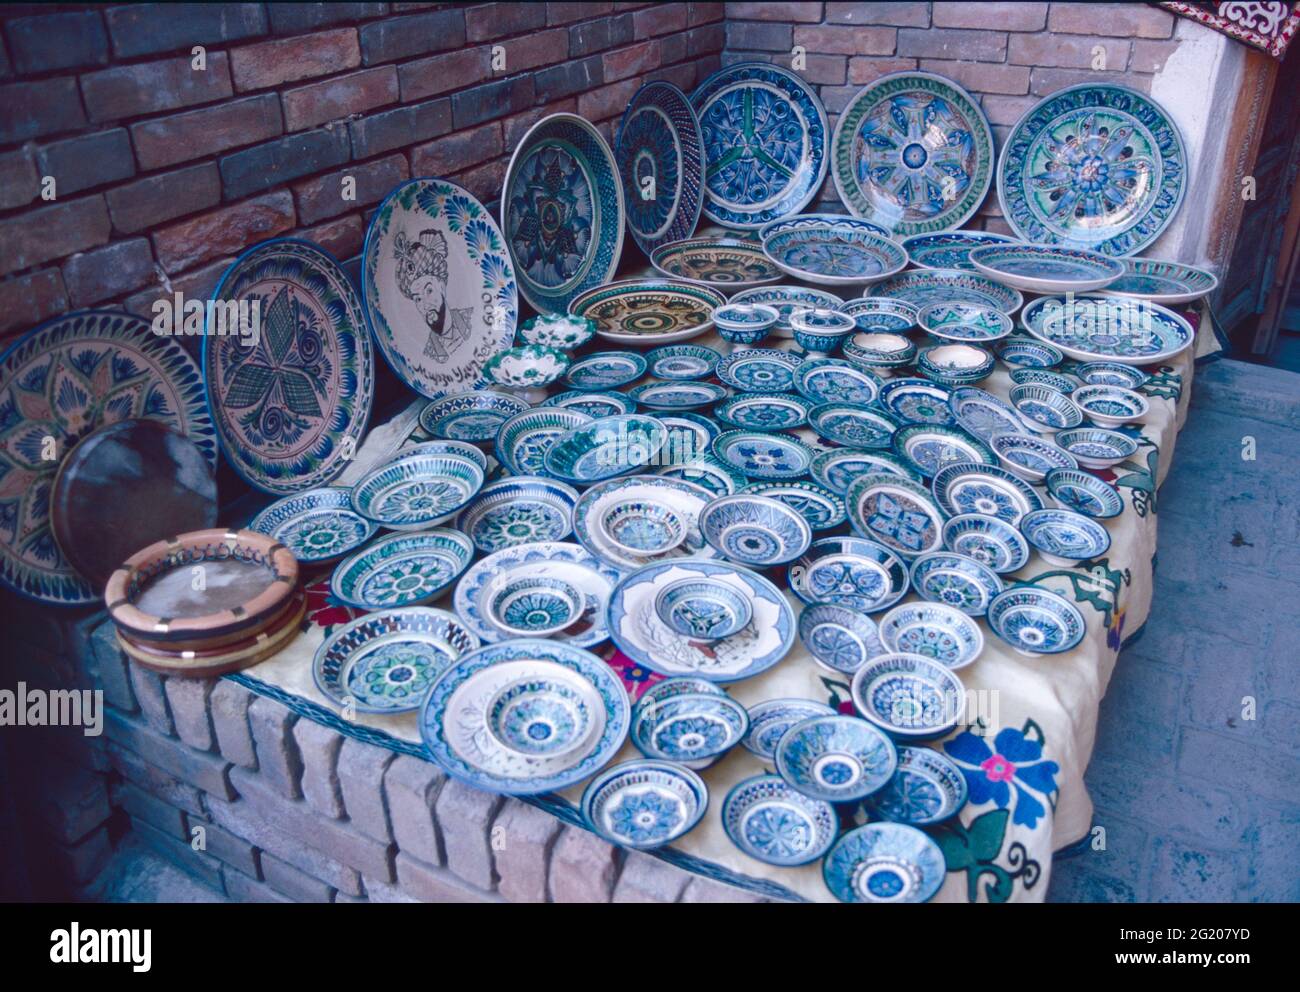 Uzbek ceramic plates exhibition, Samarkand, Uzbekistan 2000 Stock Photo